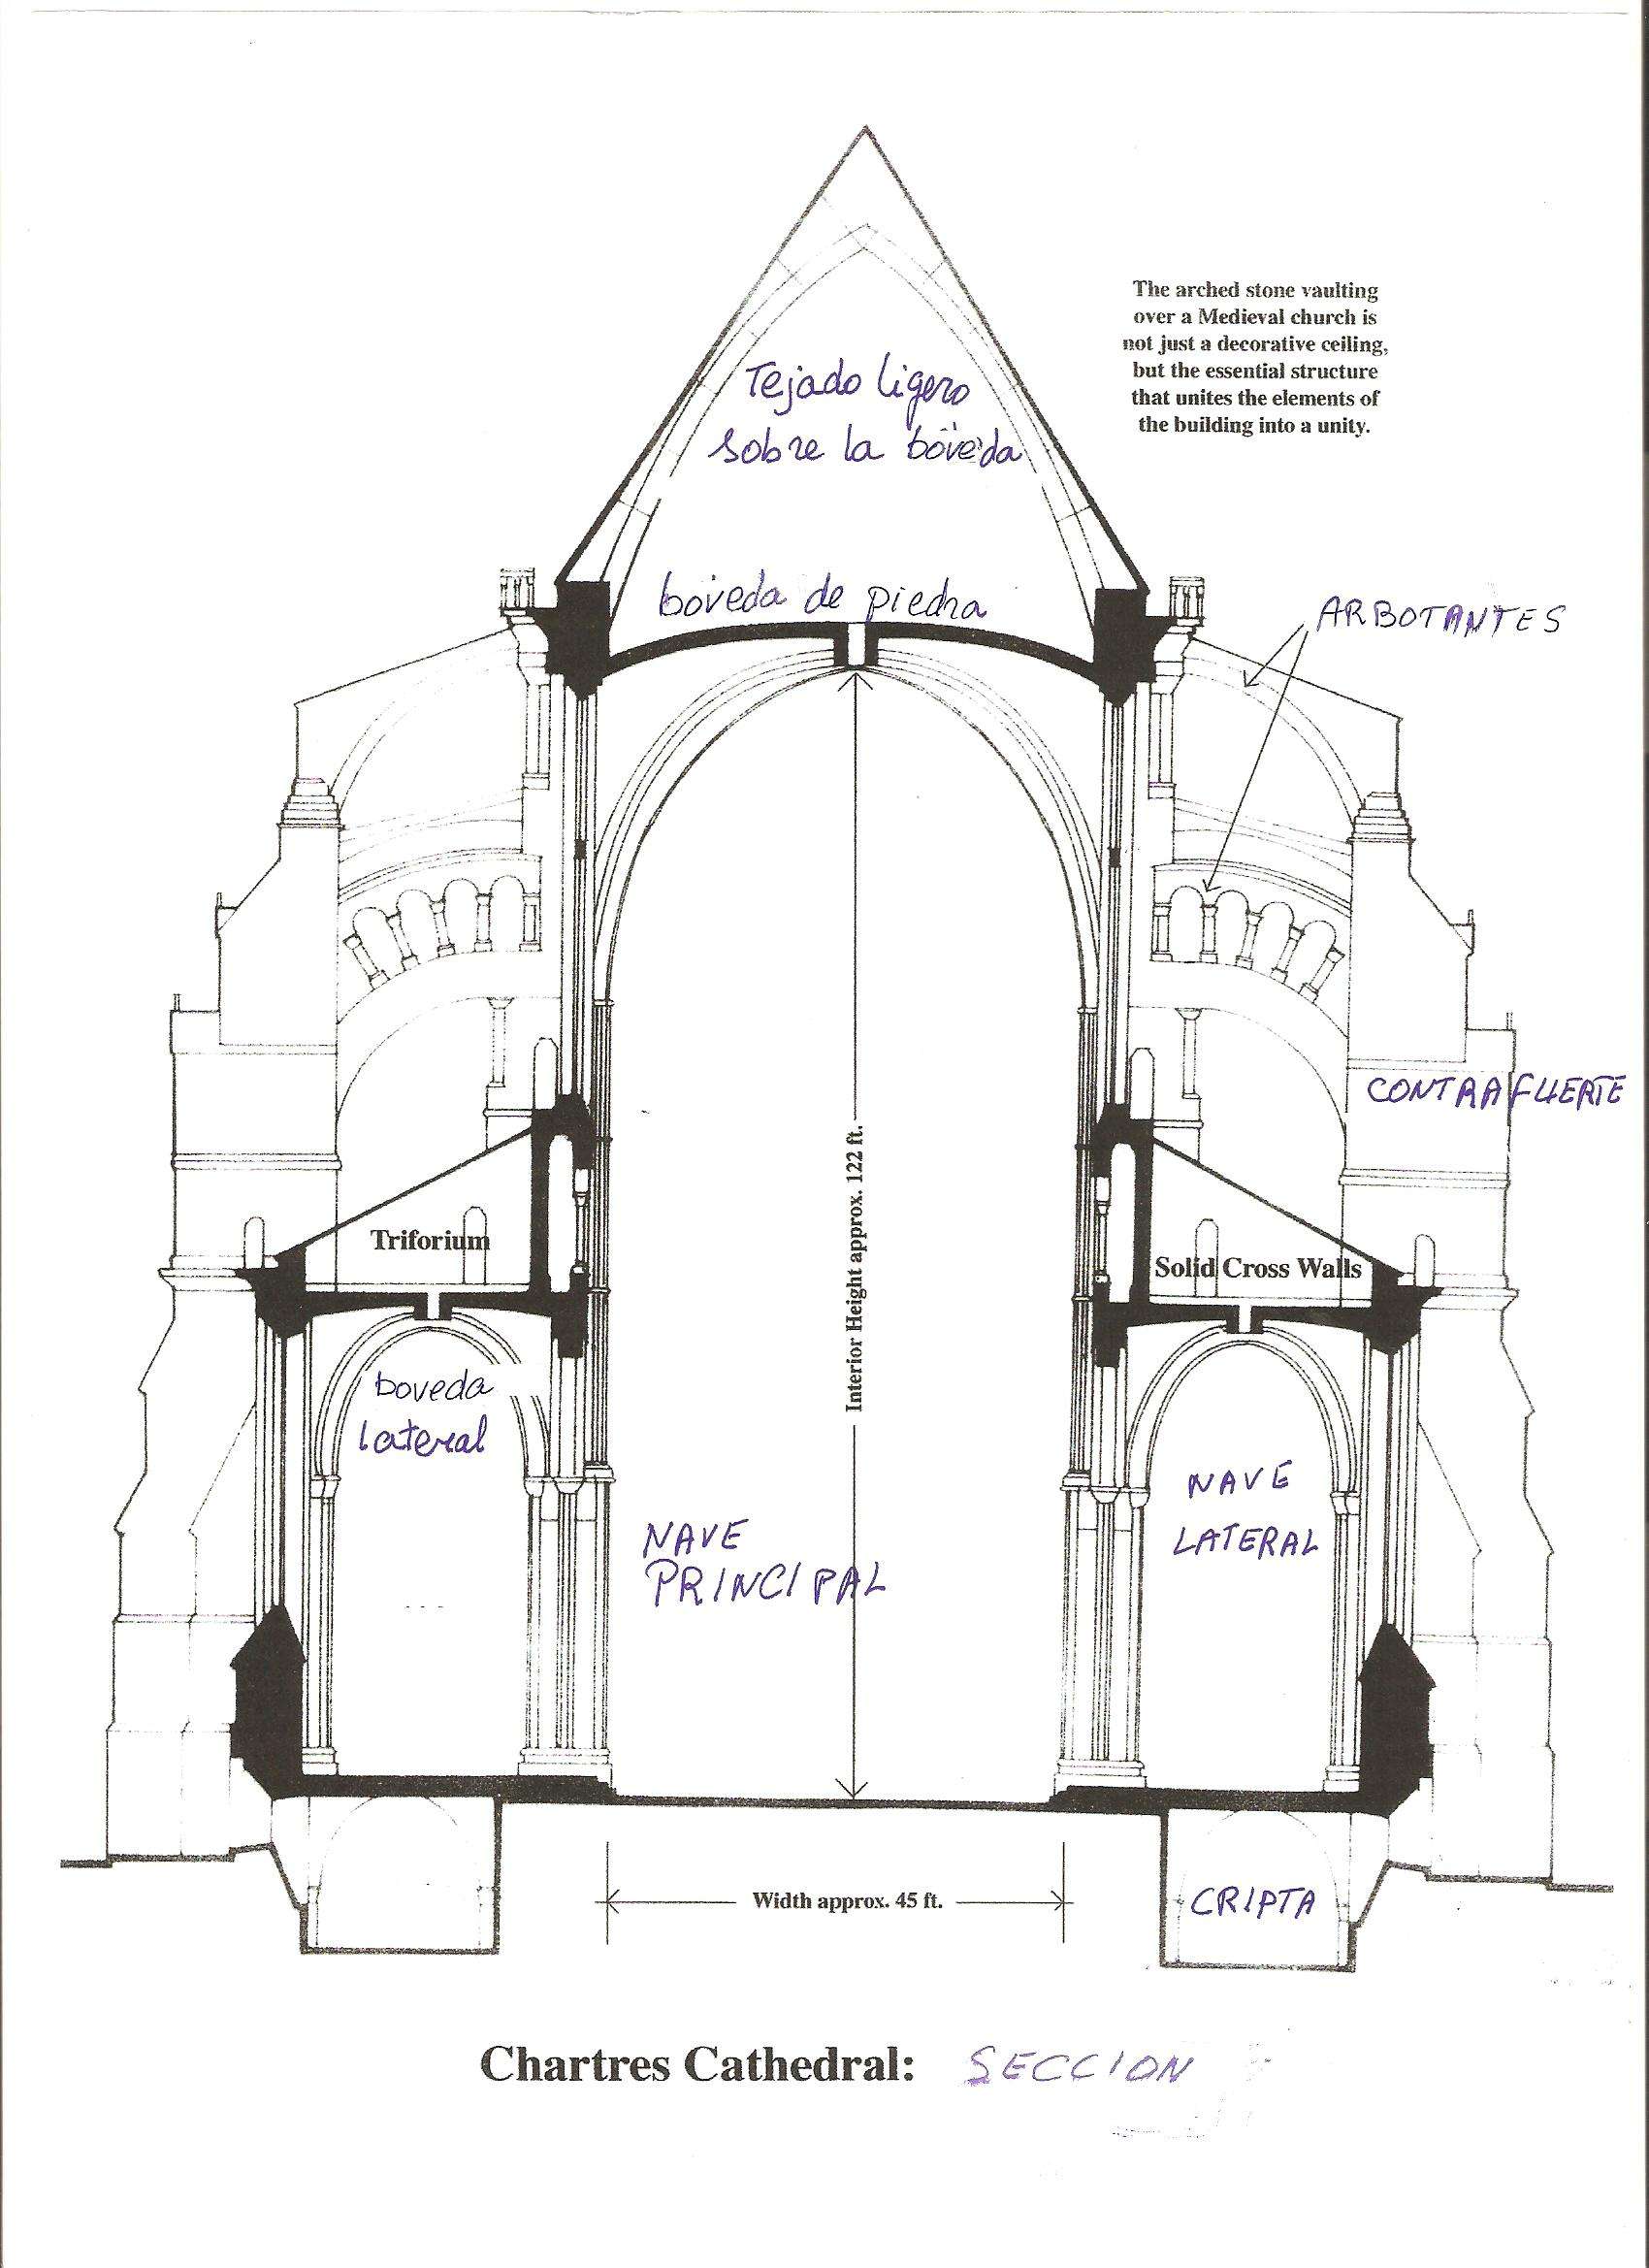 Arquitectura de la catedral de Chartres - Chartres: Arte, espiritualidad y esoterismo. (3)